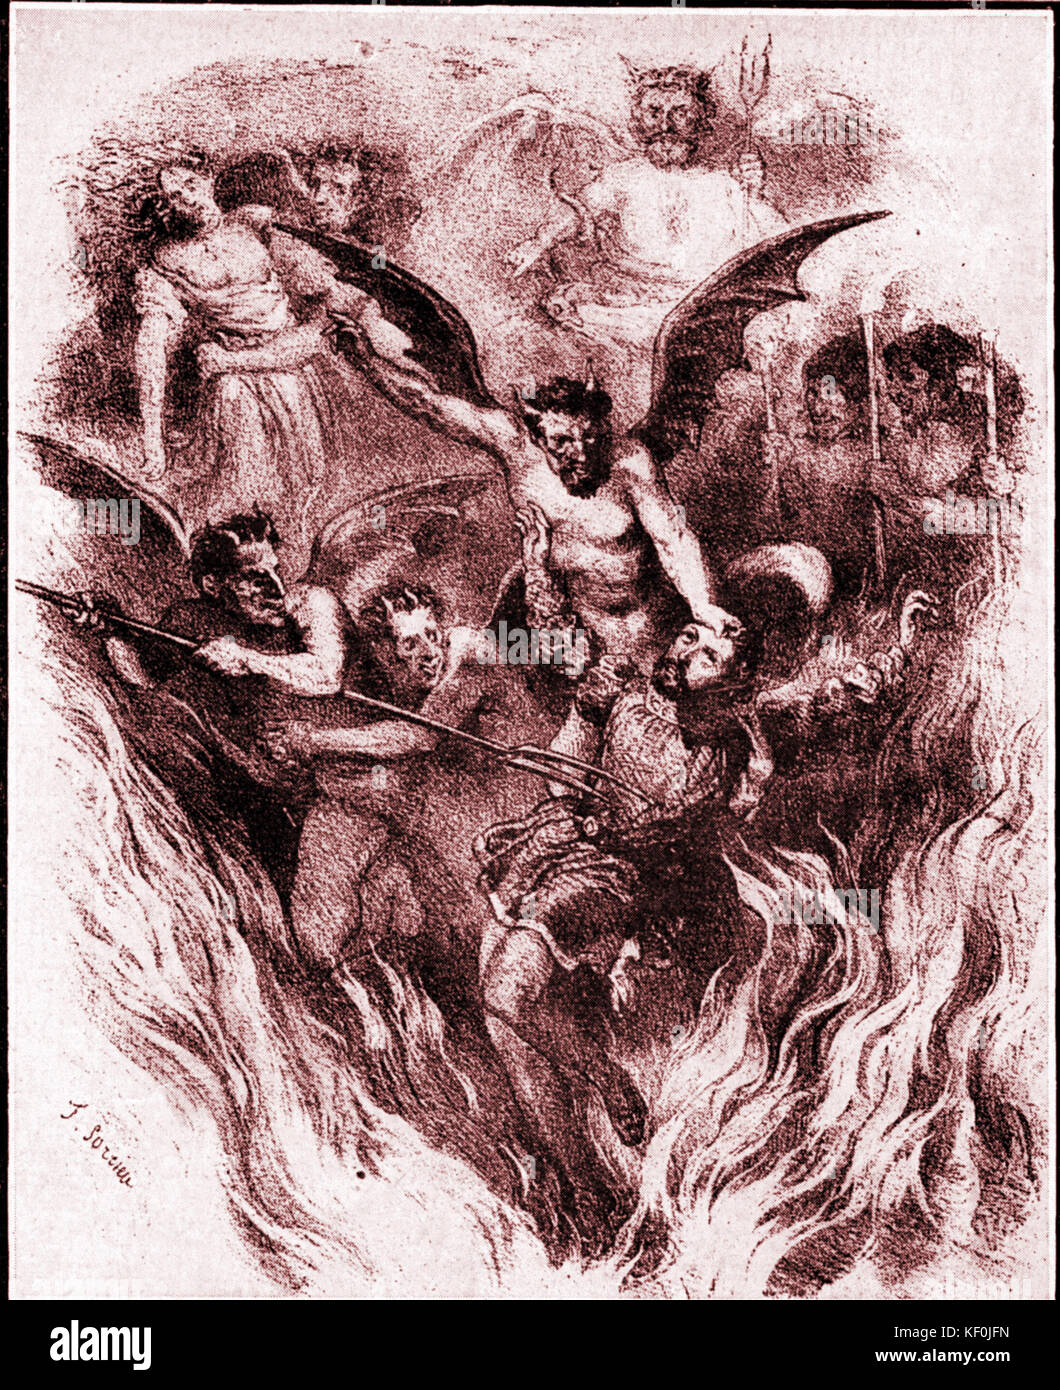 Hector Berlioz's 'The Damnation Faust', Orchestercover von Frederic Sorrieu (1854). Französischer Komponist, 1803-1869. Stockfoto